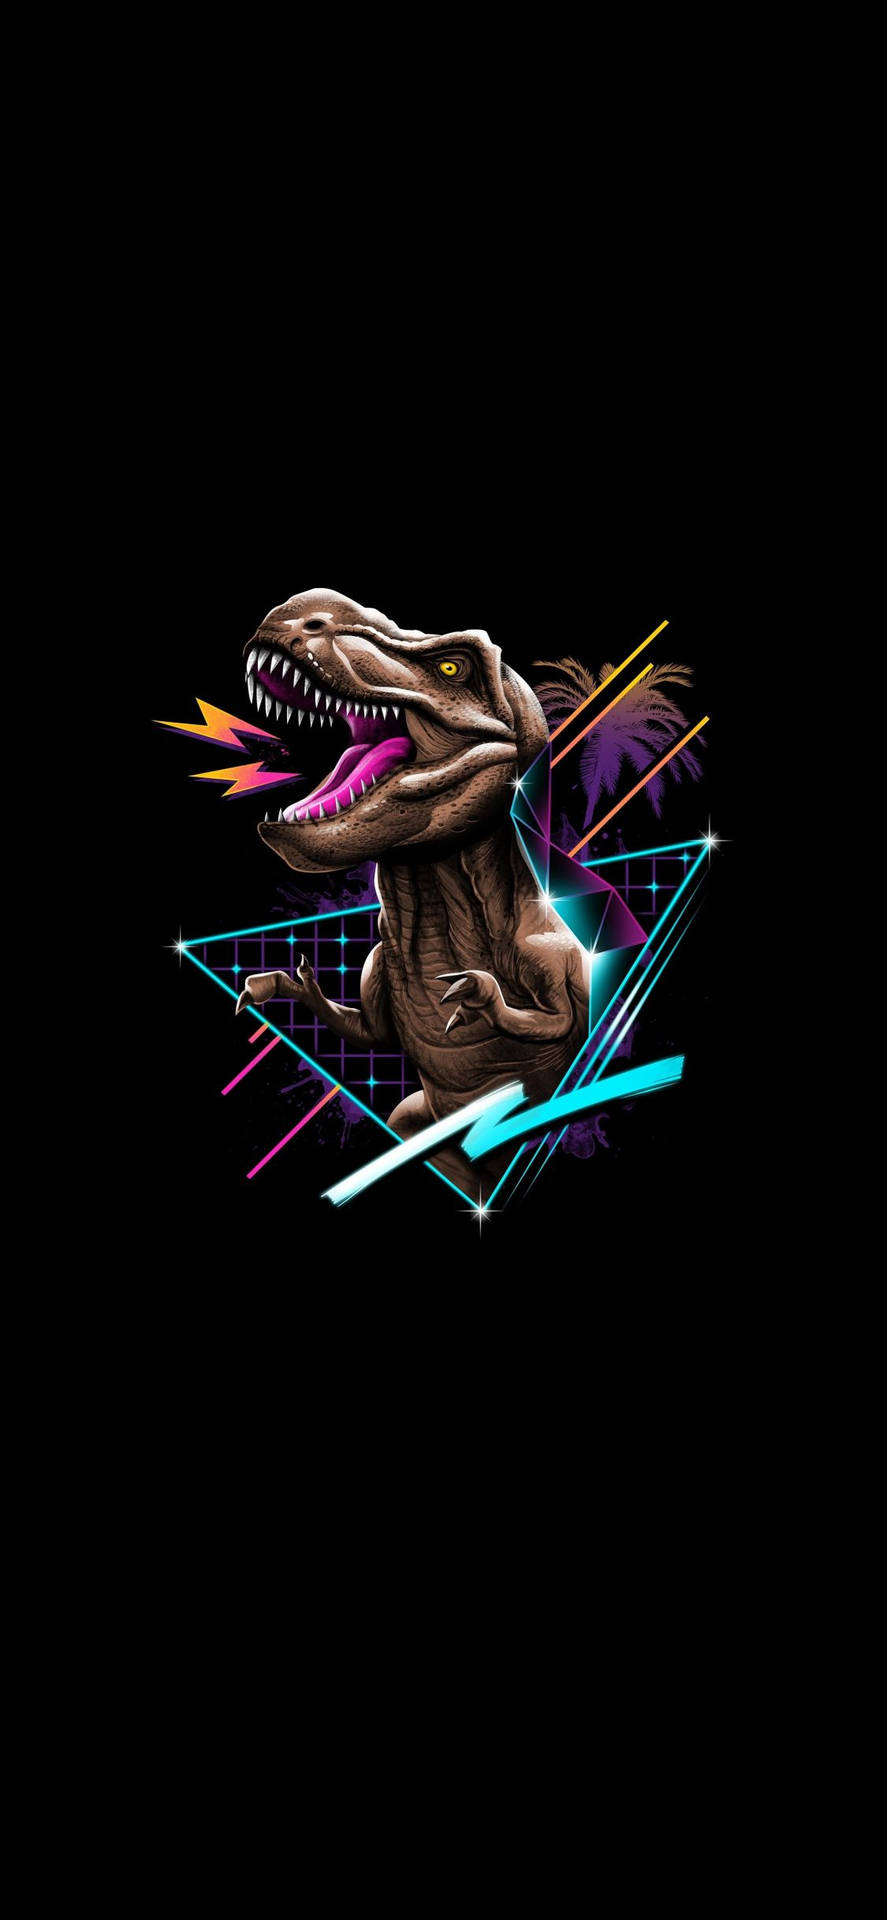 Cute Dinosaur iPhone Cool T-Rex Art Wallpaper